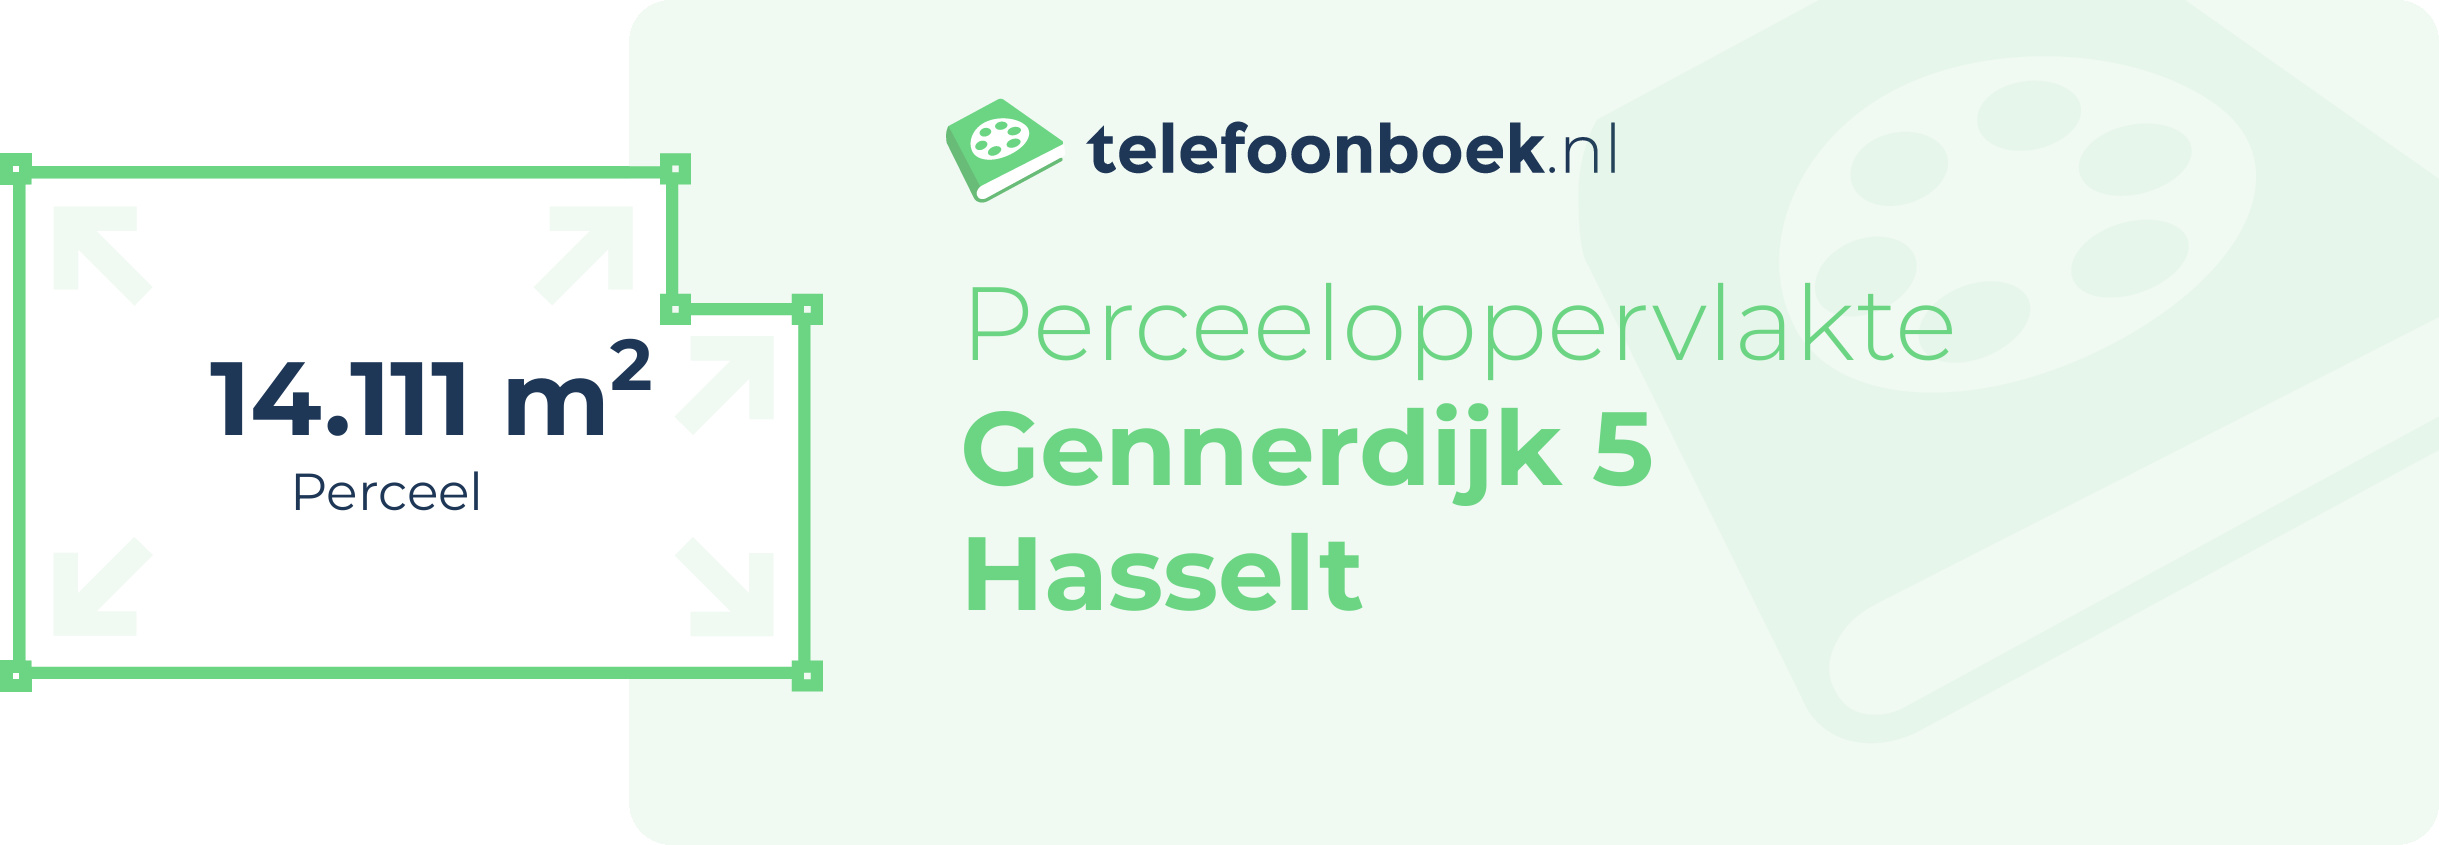 Perceeloppervlakte Gennerdijk 5 Hasselt